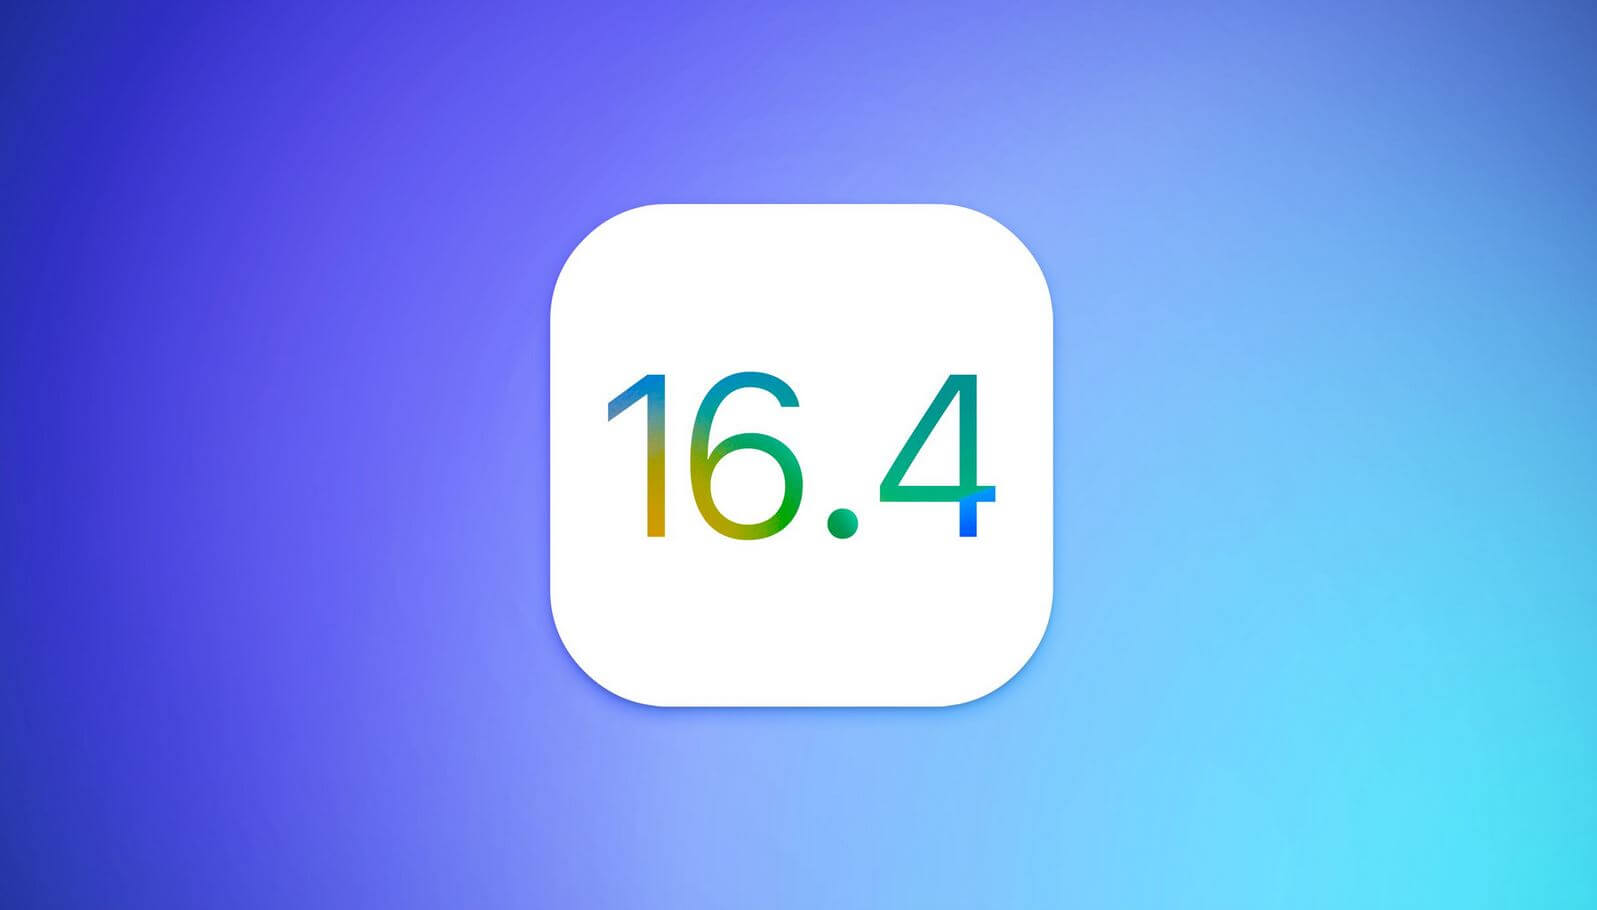 Вышла iOS 16.4 Release Candidate с новыми функциями. Как скачать прямо